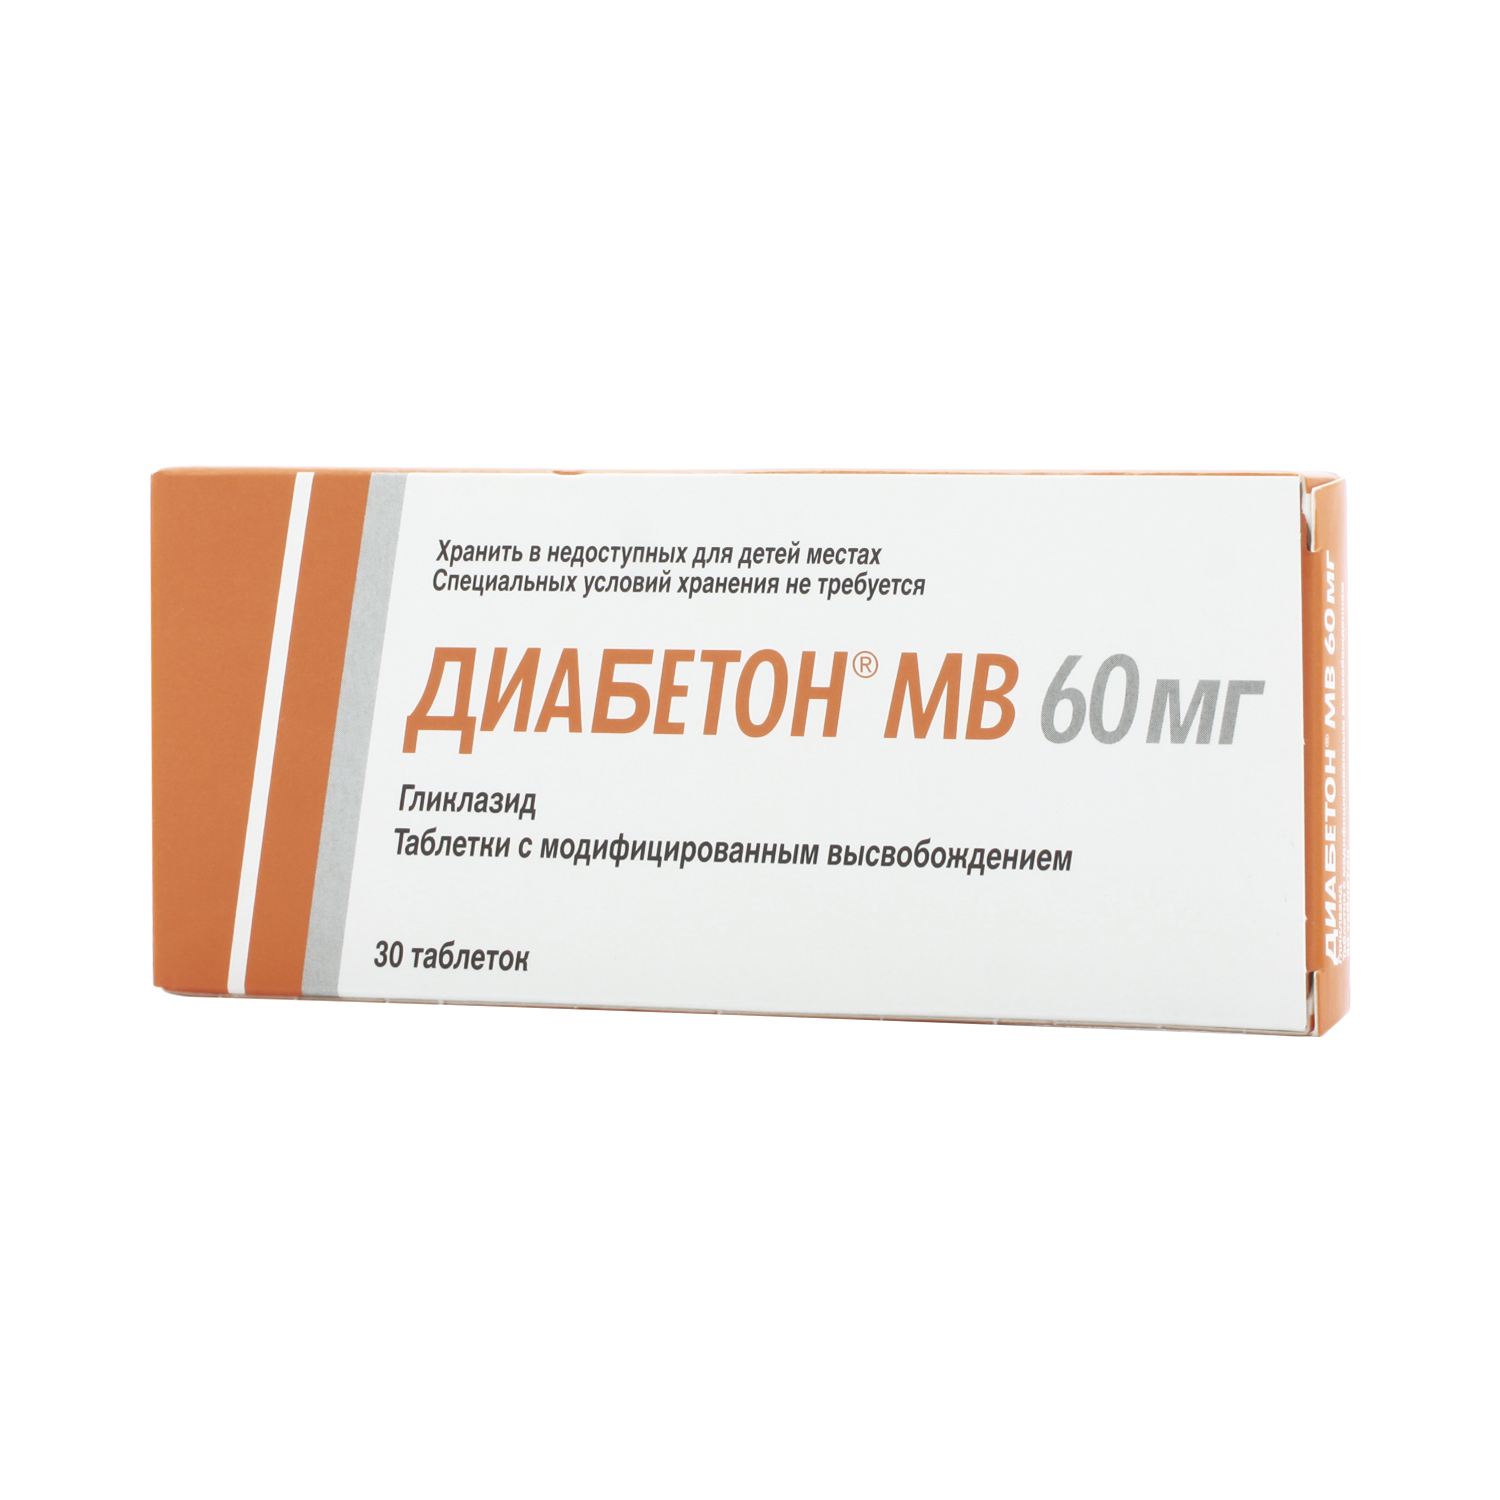 Диабетон МВ Таблетки 60 мг 30 шт  по цене 230,0 руб  .